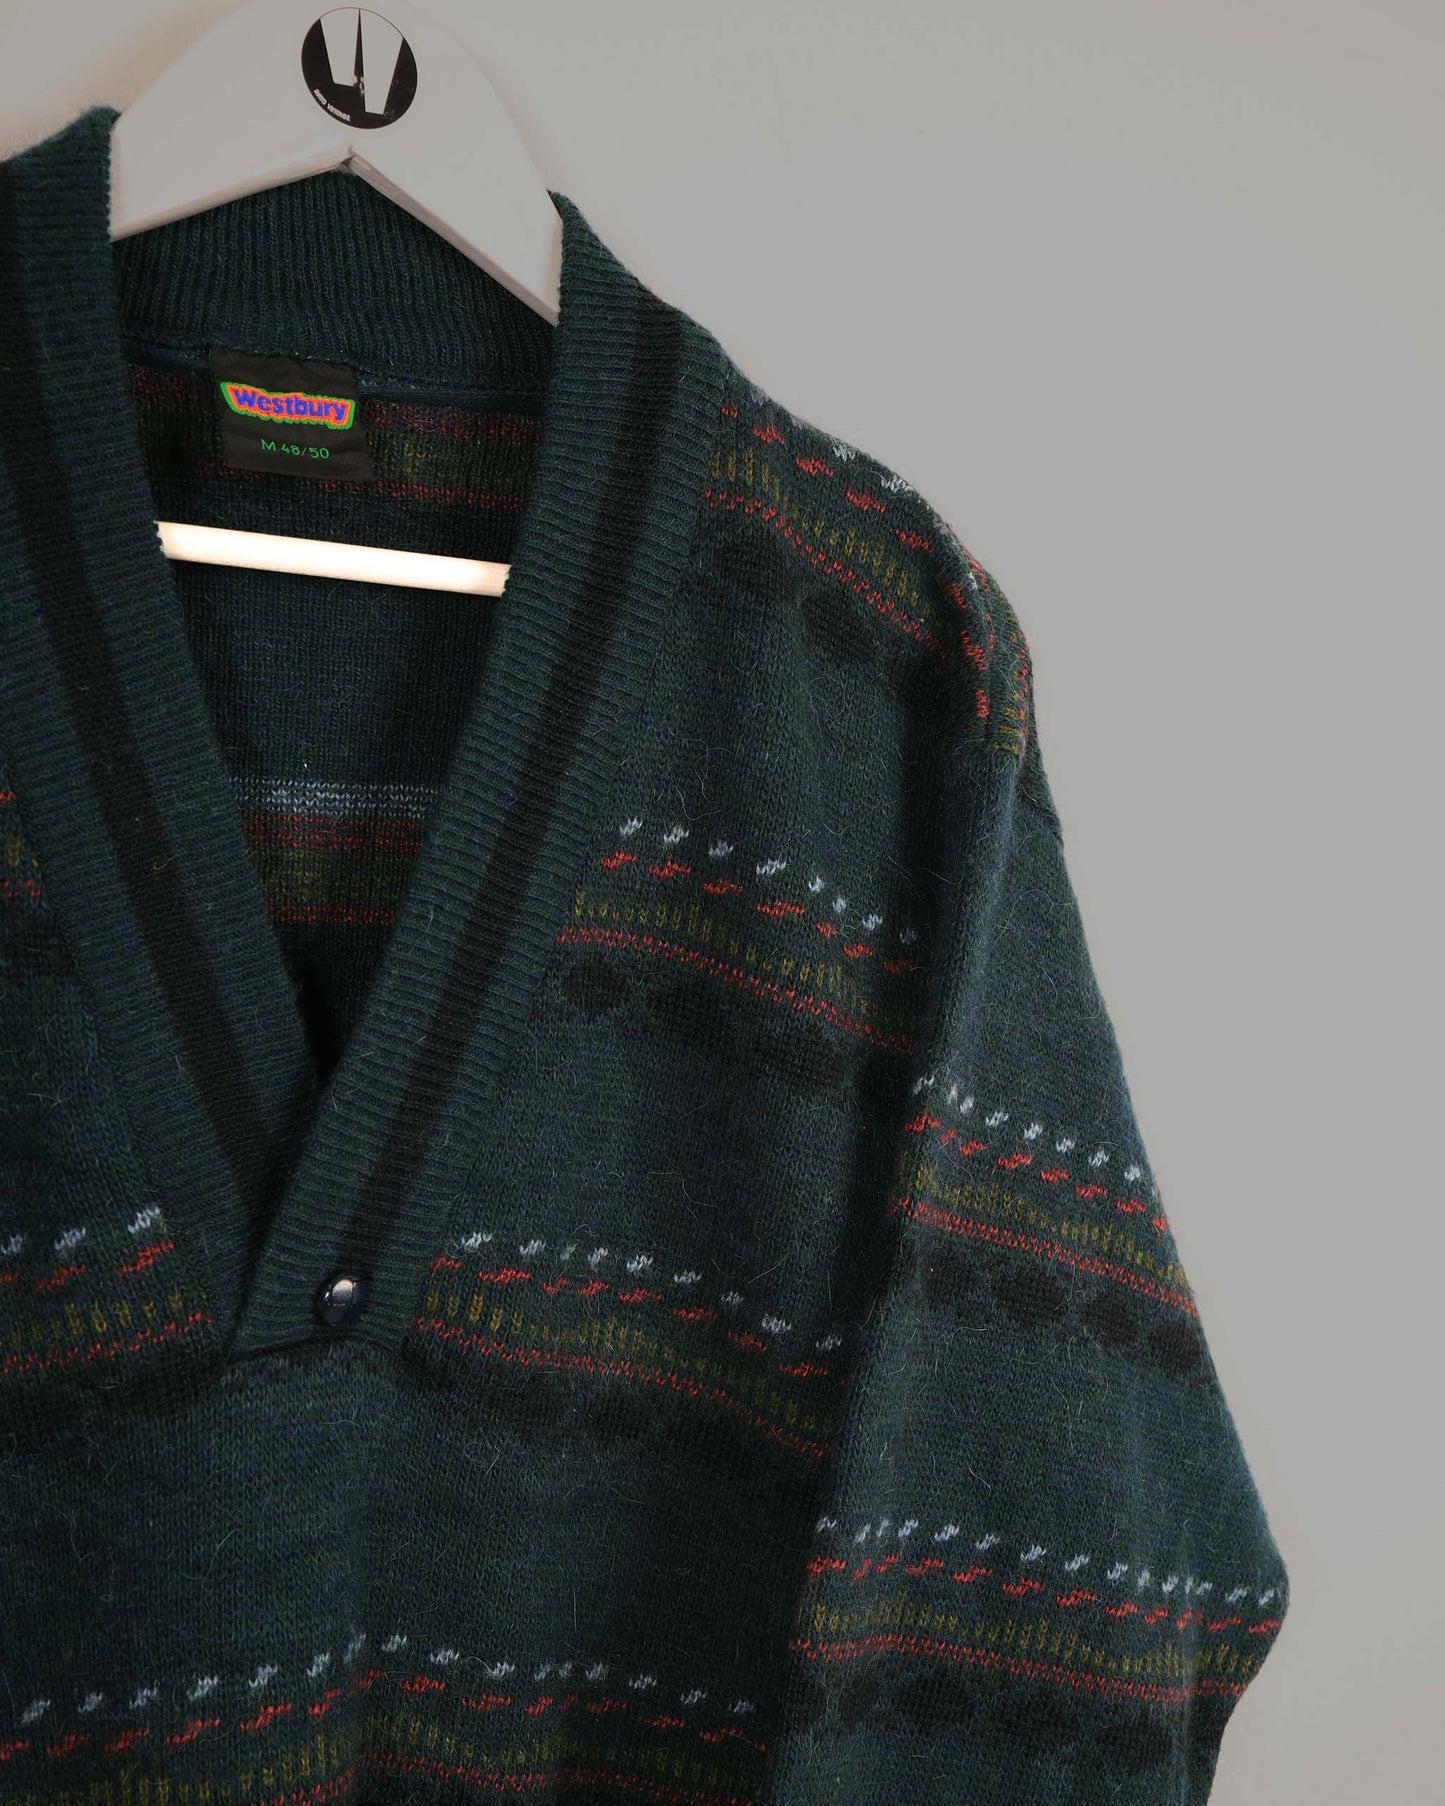 Maglione vintage con scollo a V di Westbury